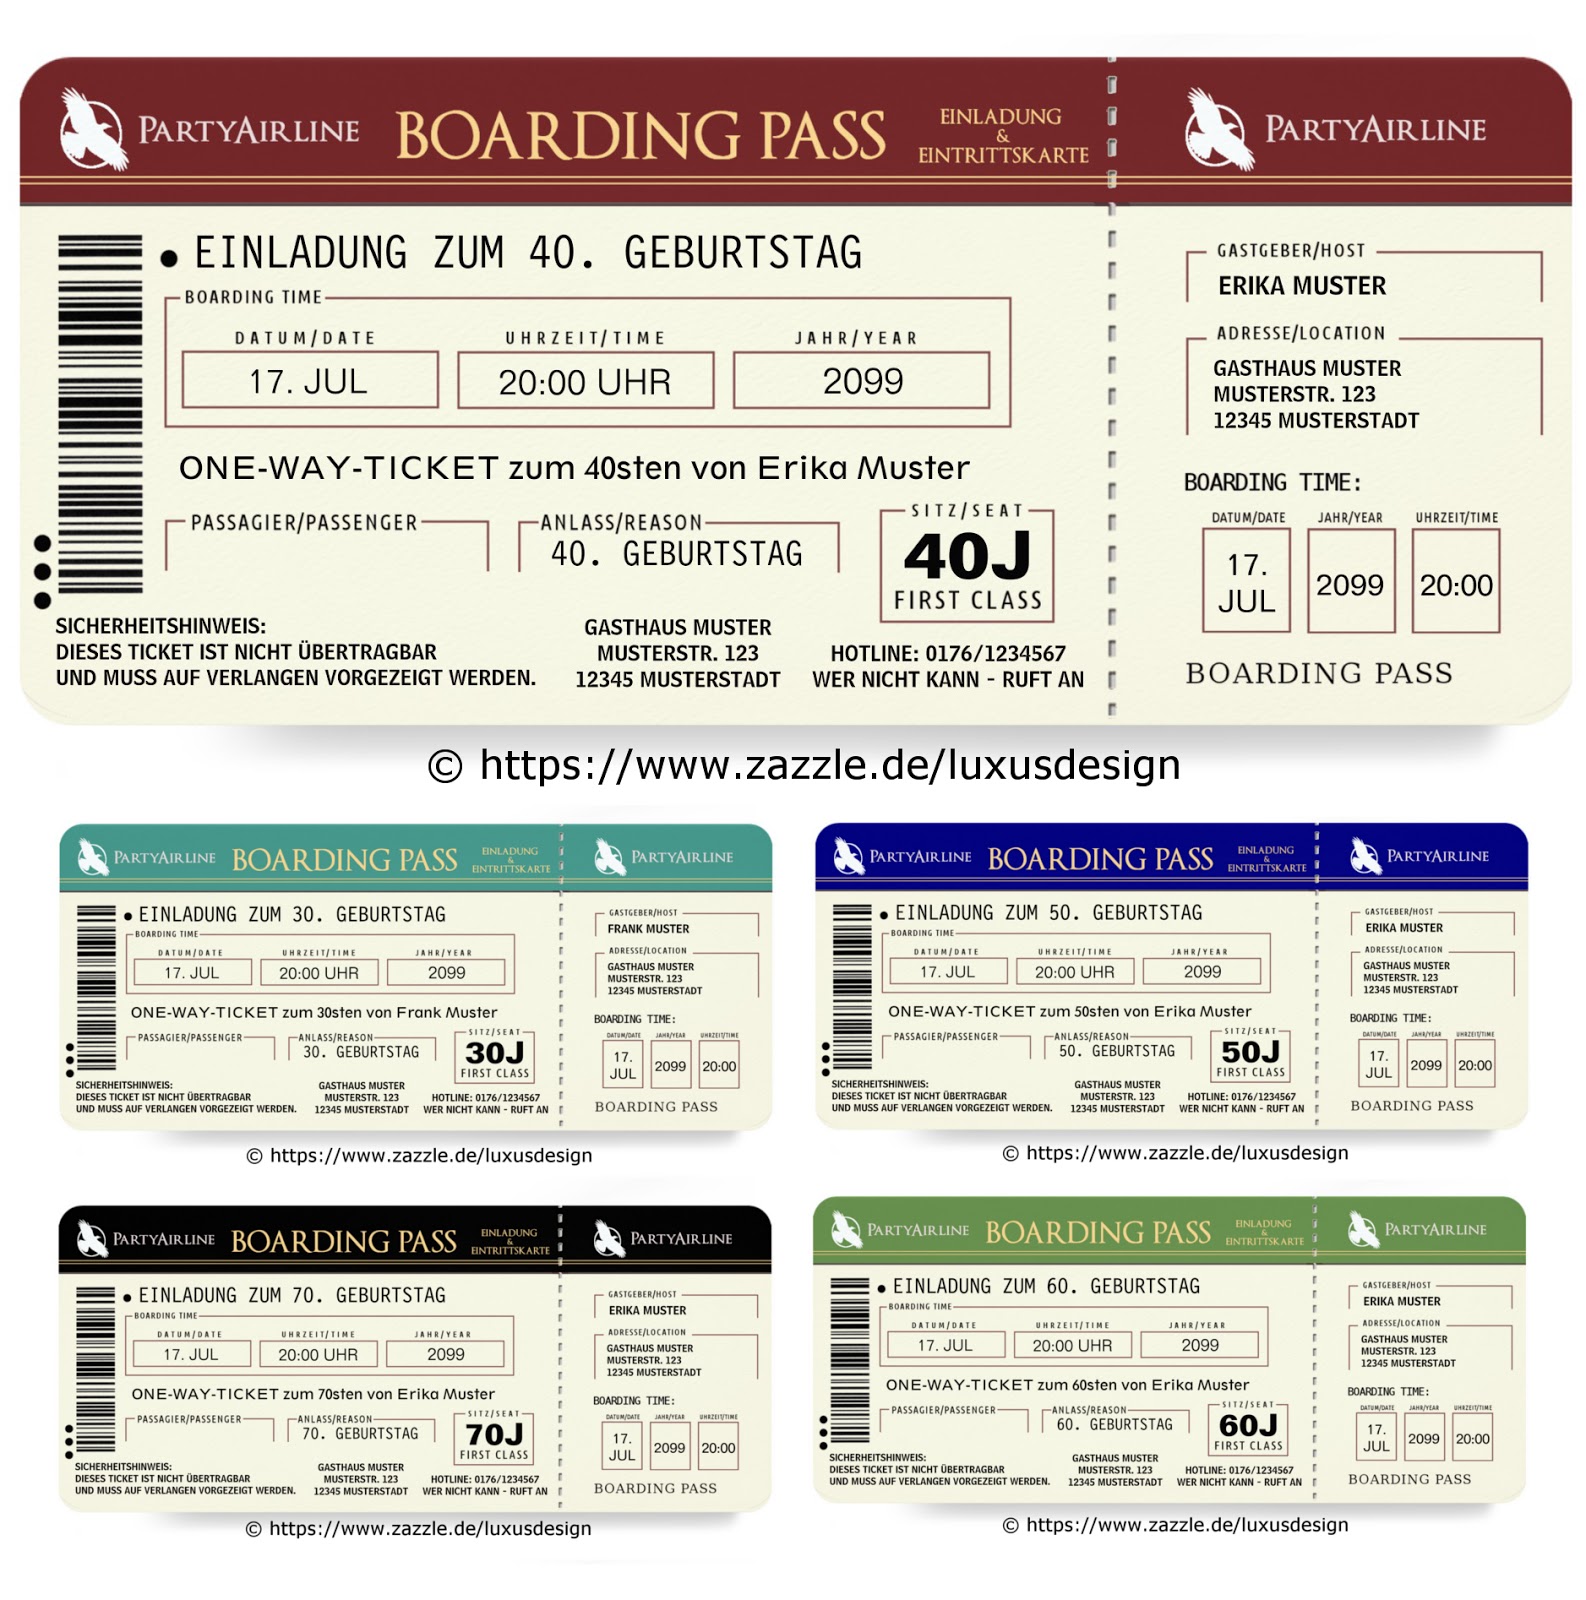 Coole Einladungskarten Zum Geburtstag Als Flugticket Boarding Pass